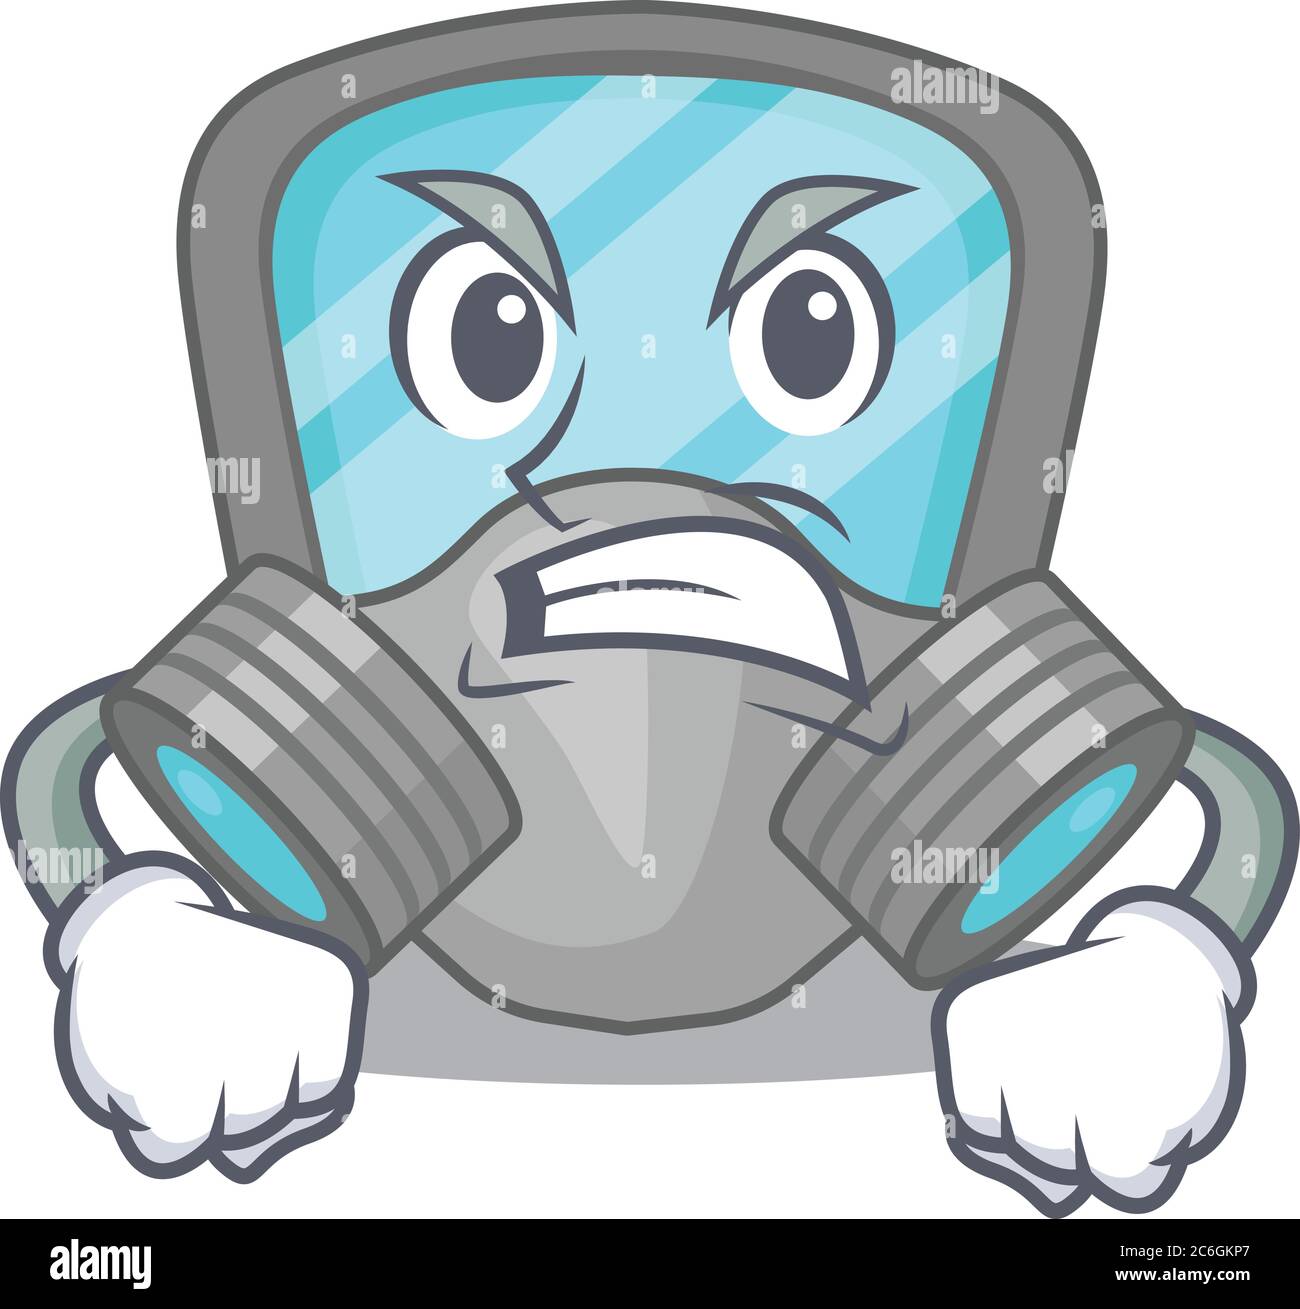 Une image de dessin animé d'un masque respiratoire montrant un visage en colère Illustration de Vecteur